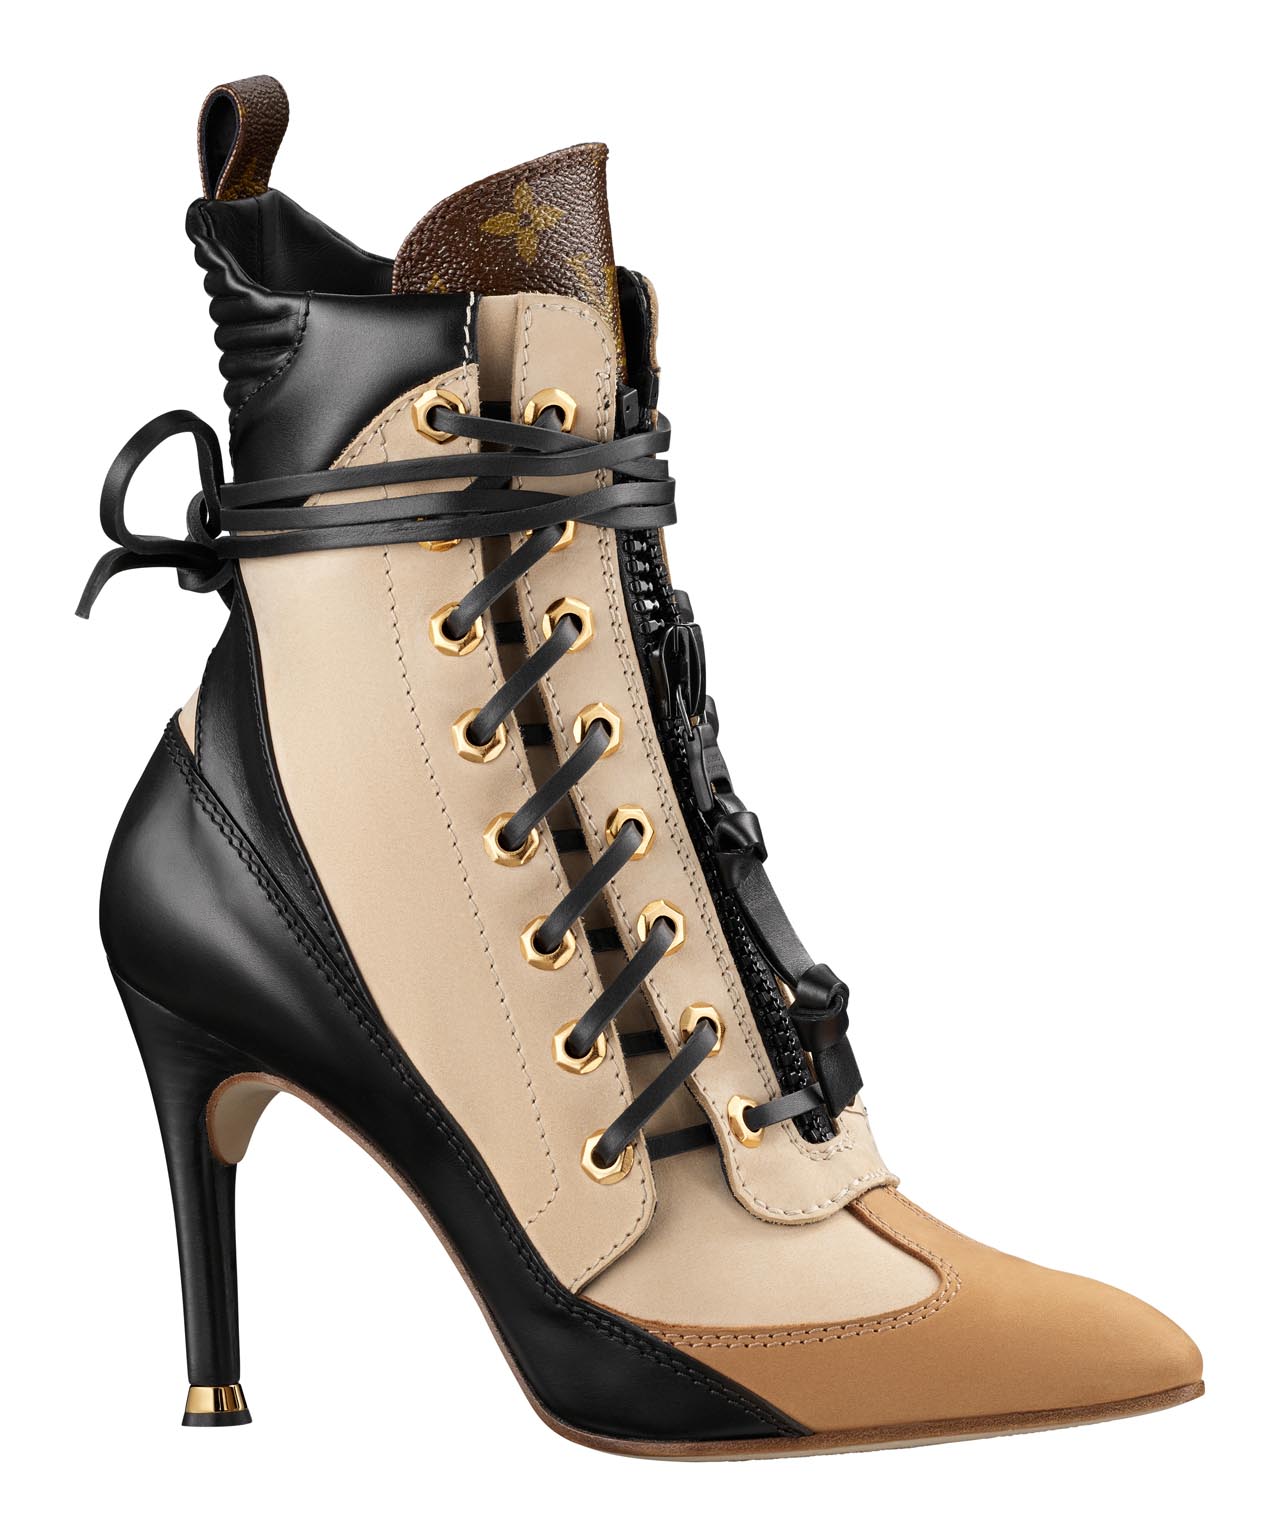 Louis Vuitton Boots 2019 #shoes #shoesaddict #sandals #zapatos #estilo  #fashion #styl…